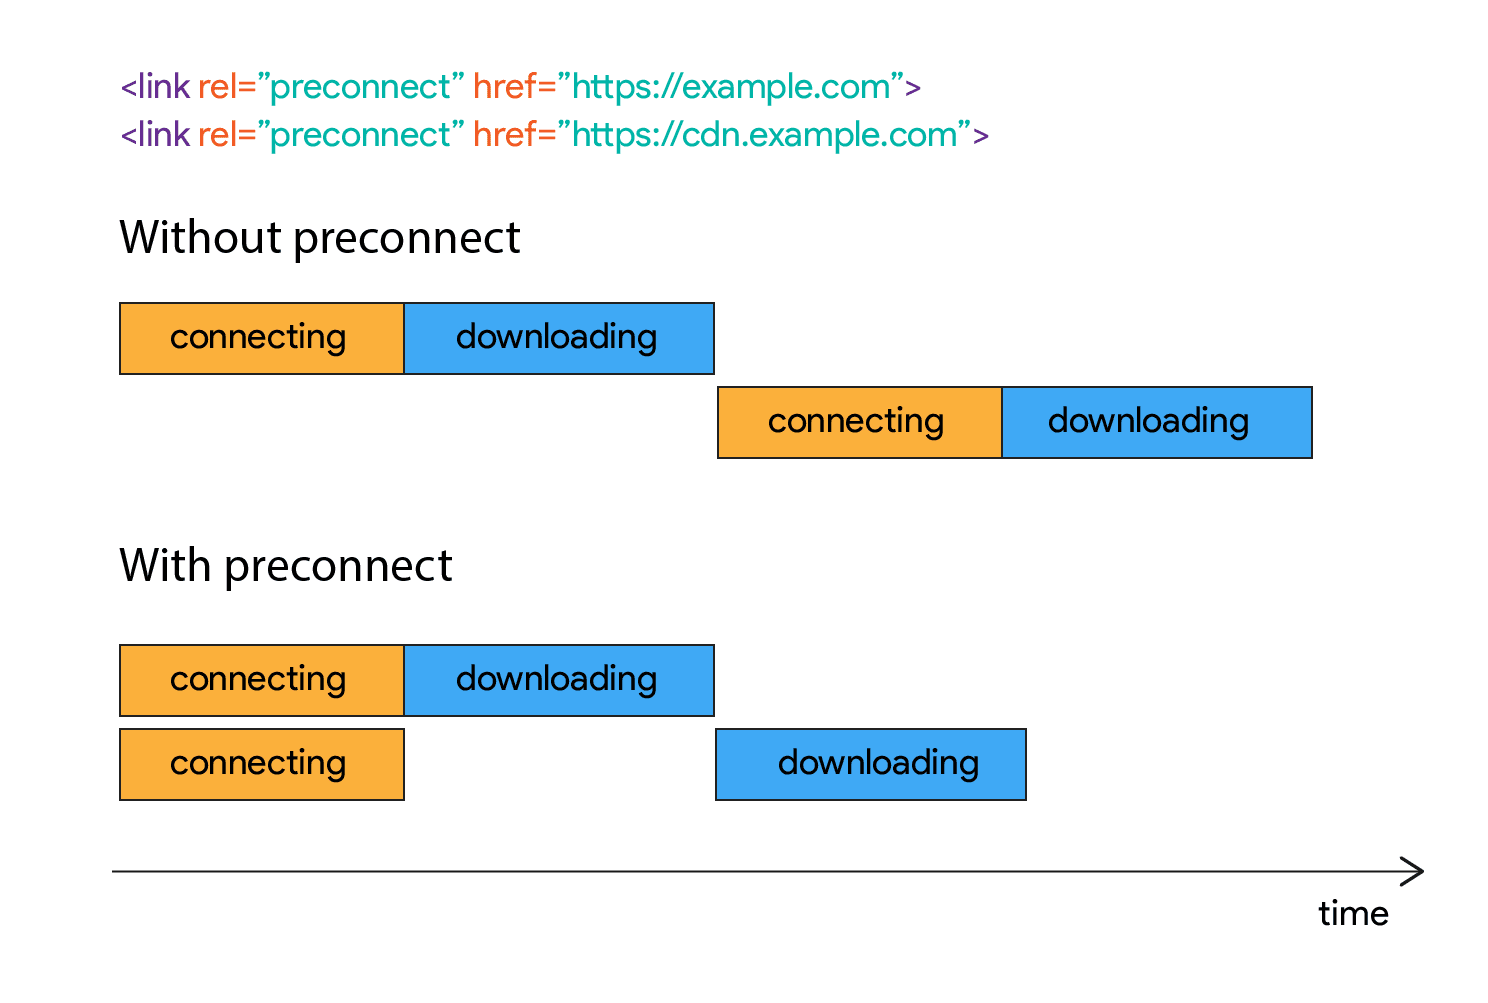 نموداری که نشان می دهد چگونه دانلود برای مدتی پس از برقراری اتصال شروع نمی شود.